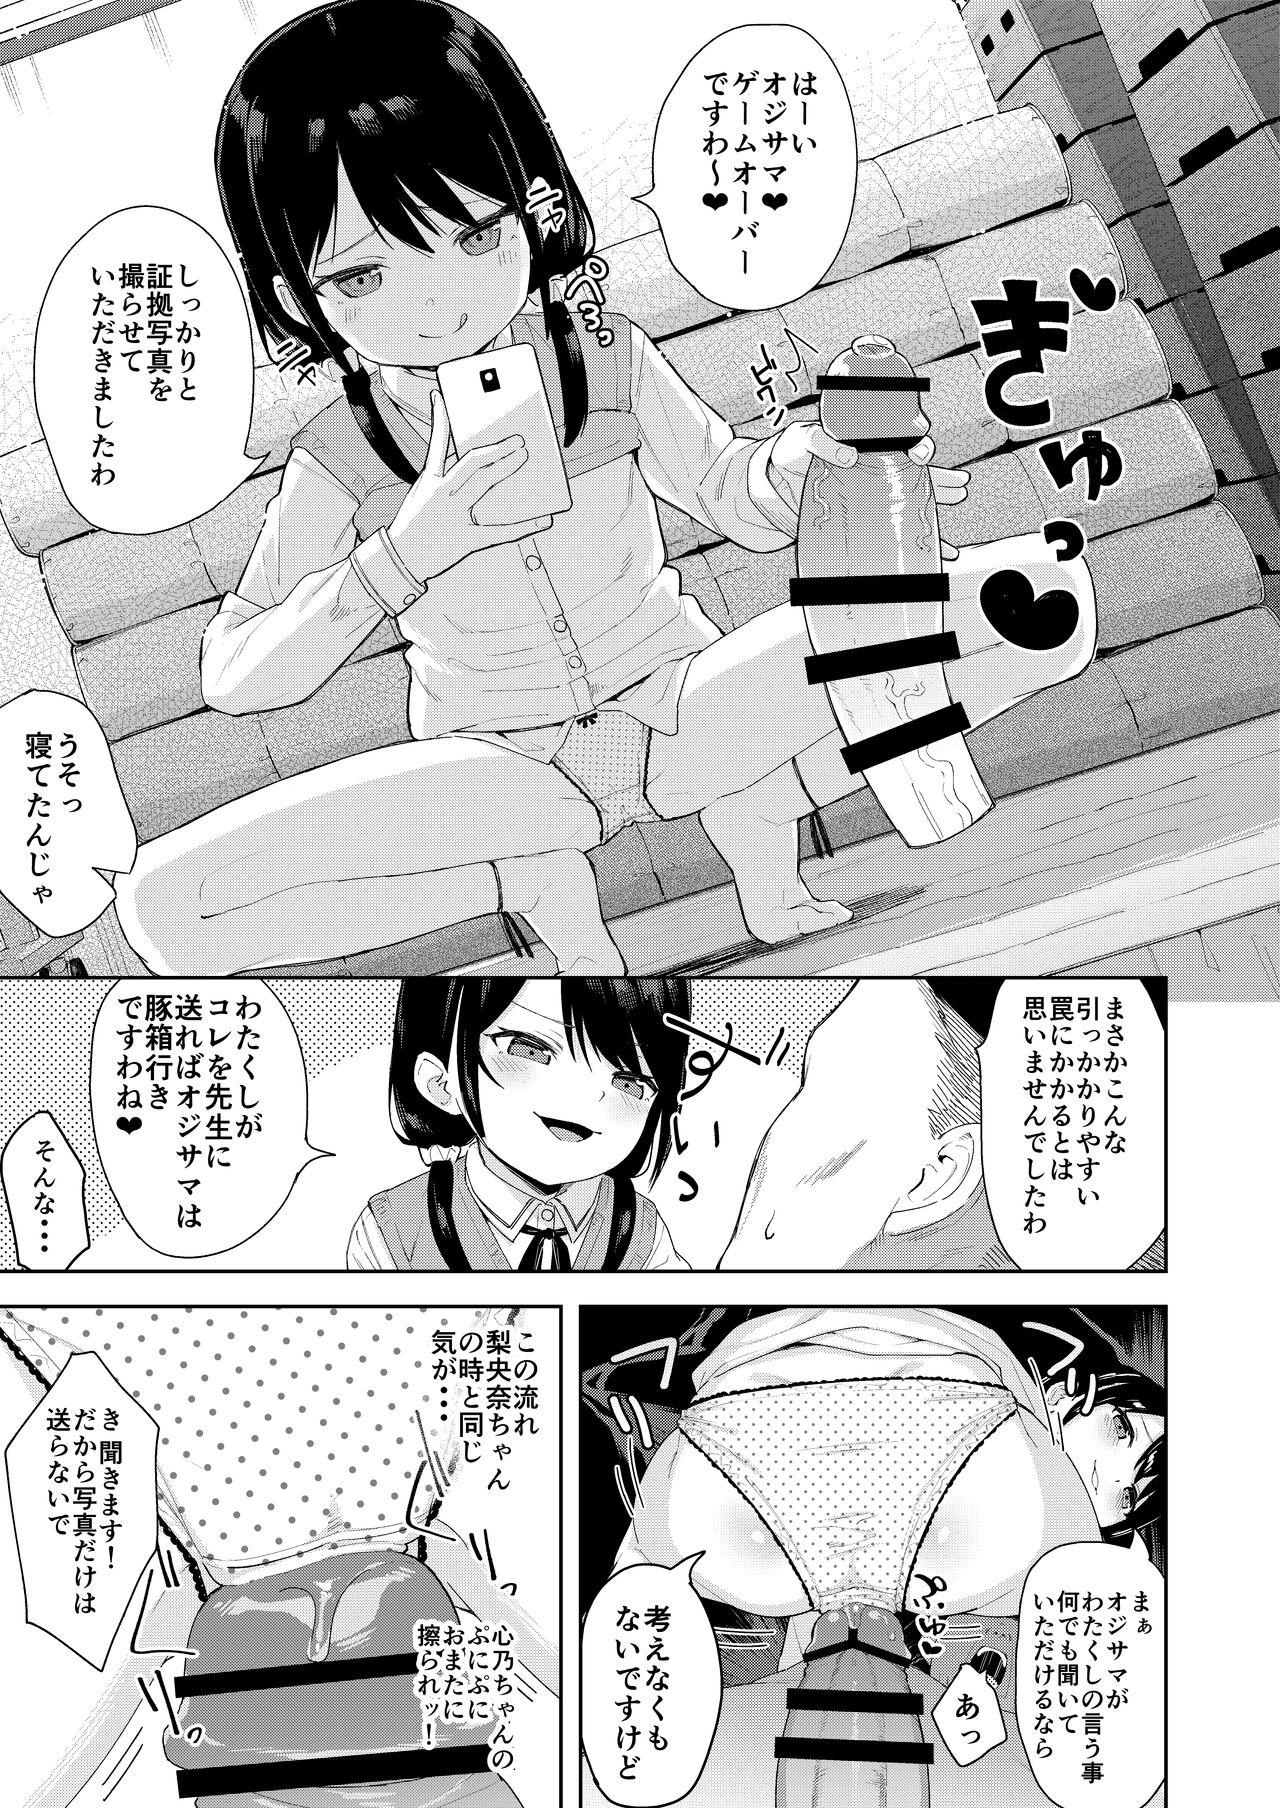 Lolicon Musume no Tomodachi no Mesugaki ni Okasaremashita 2 - Original 18 Year Old - Page 10